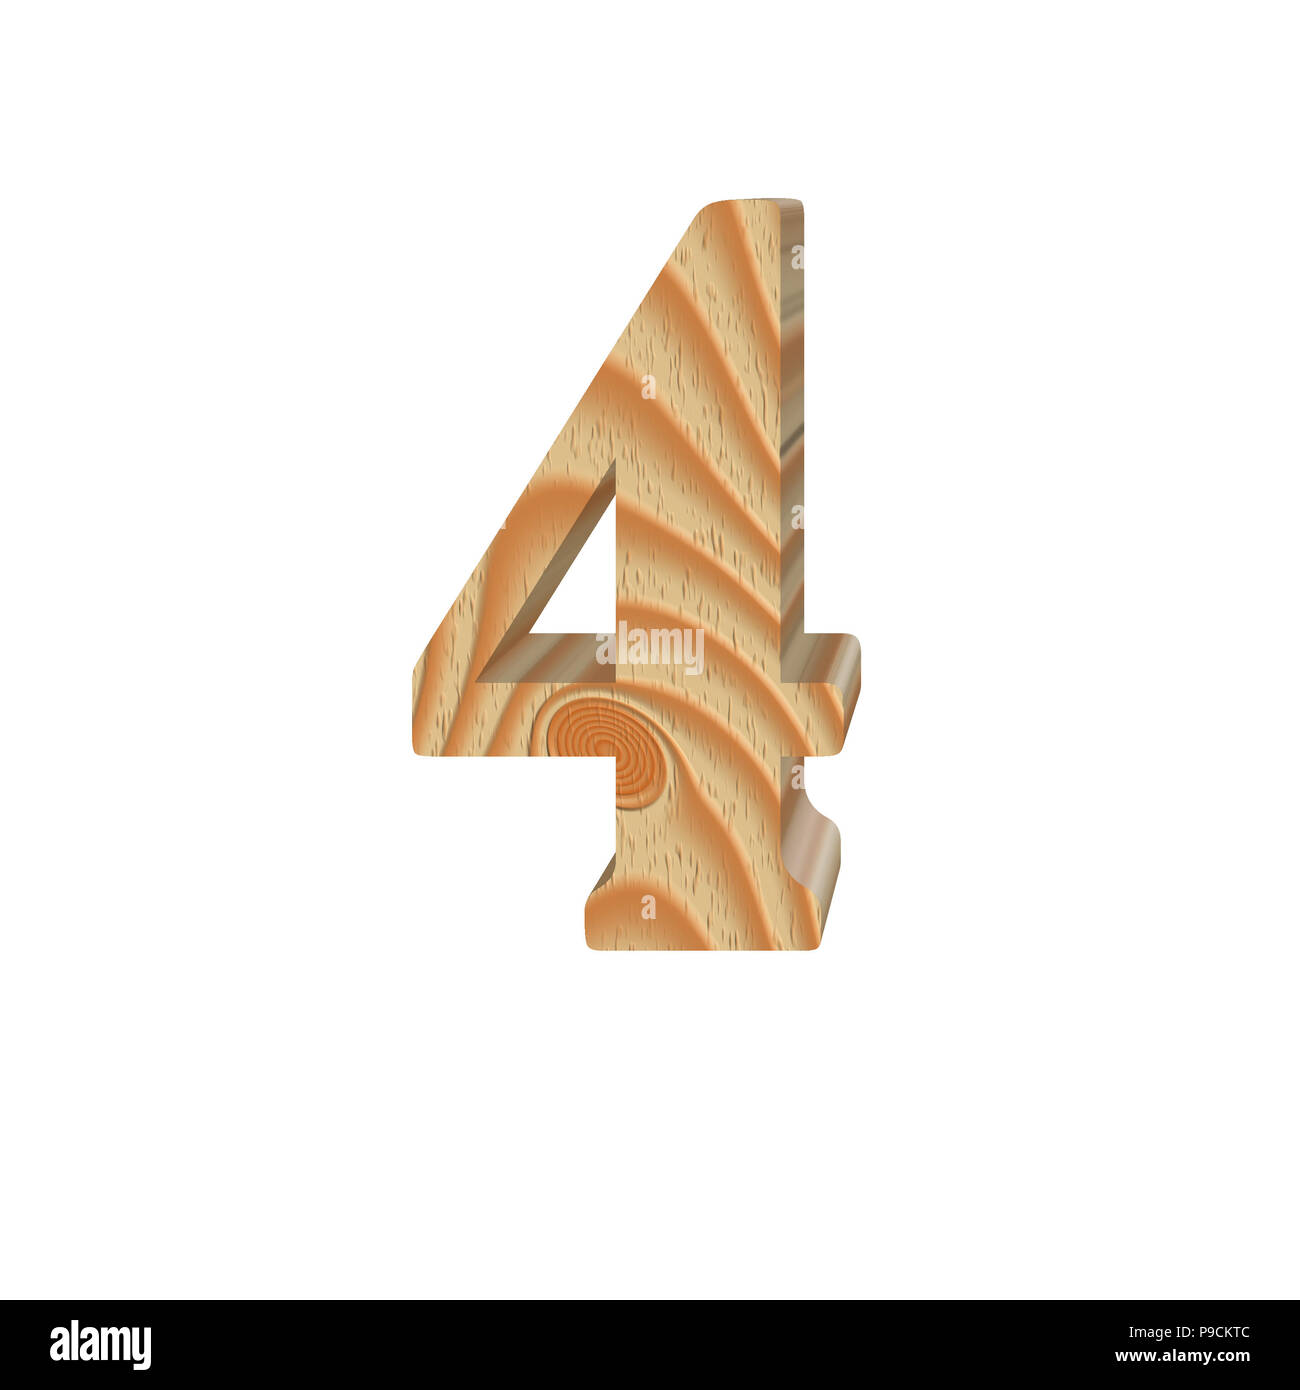 Holz Zahl 4 (vier) auf weißem Hintergrund. Textur aus Holz. Teil des  ursprünglichen Alphabet Schrift. Volumetrische alphabet Design.  3D-Darstellung Stockfotografie - Alamy